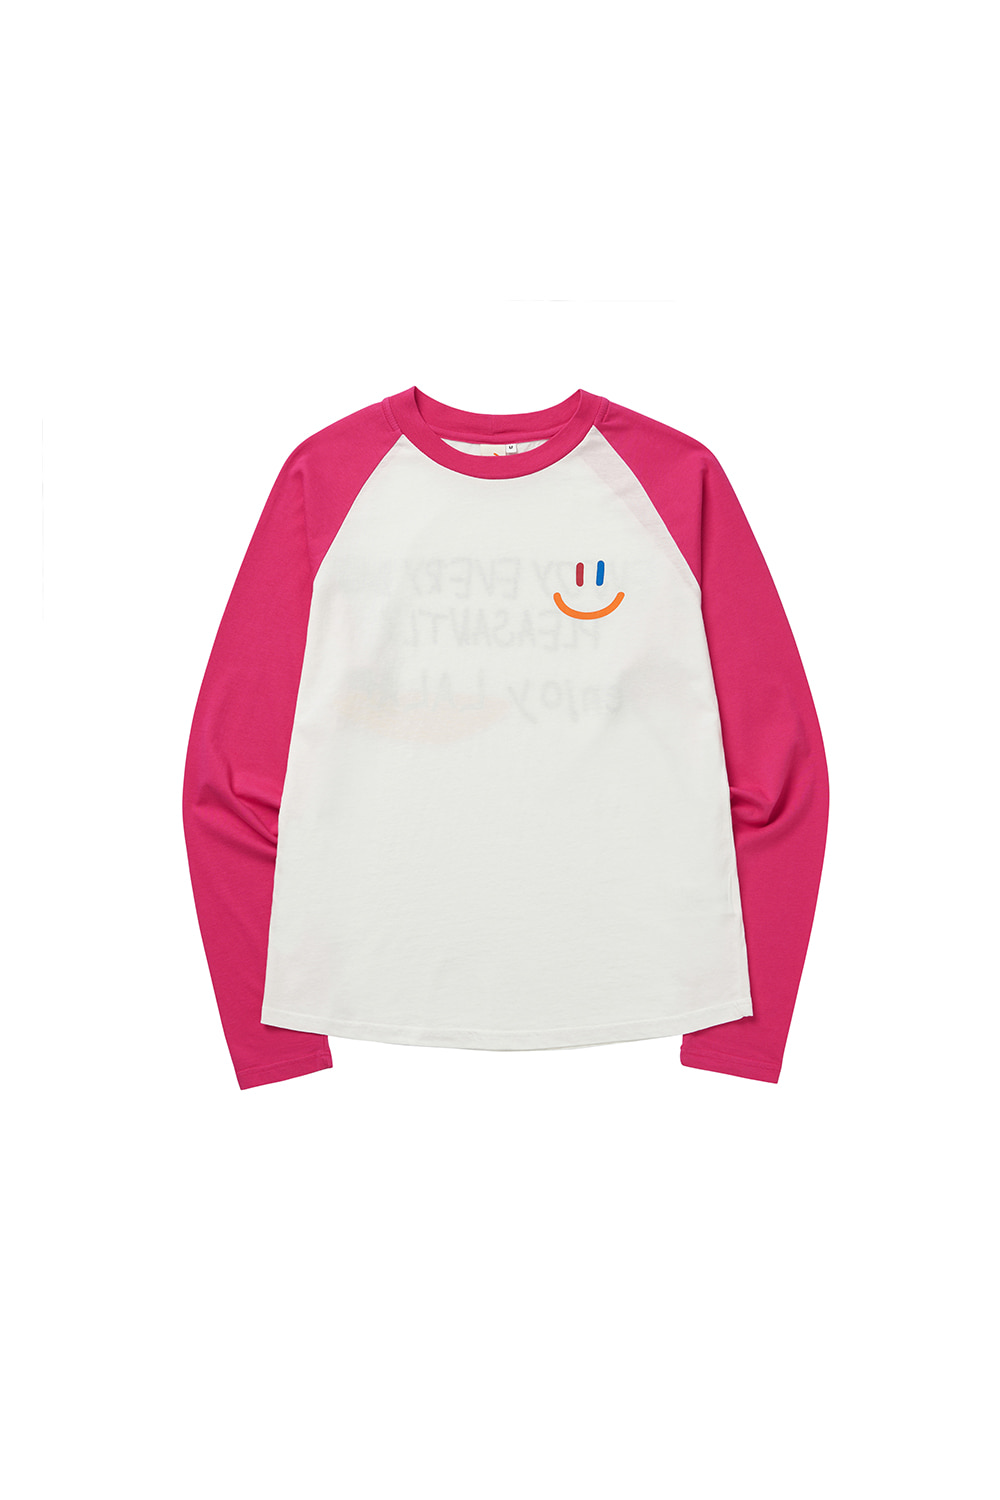 LaLa Raglan T-Shirt [Pink]